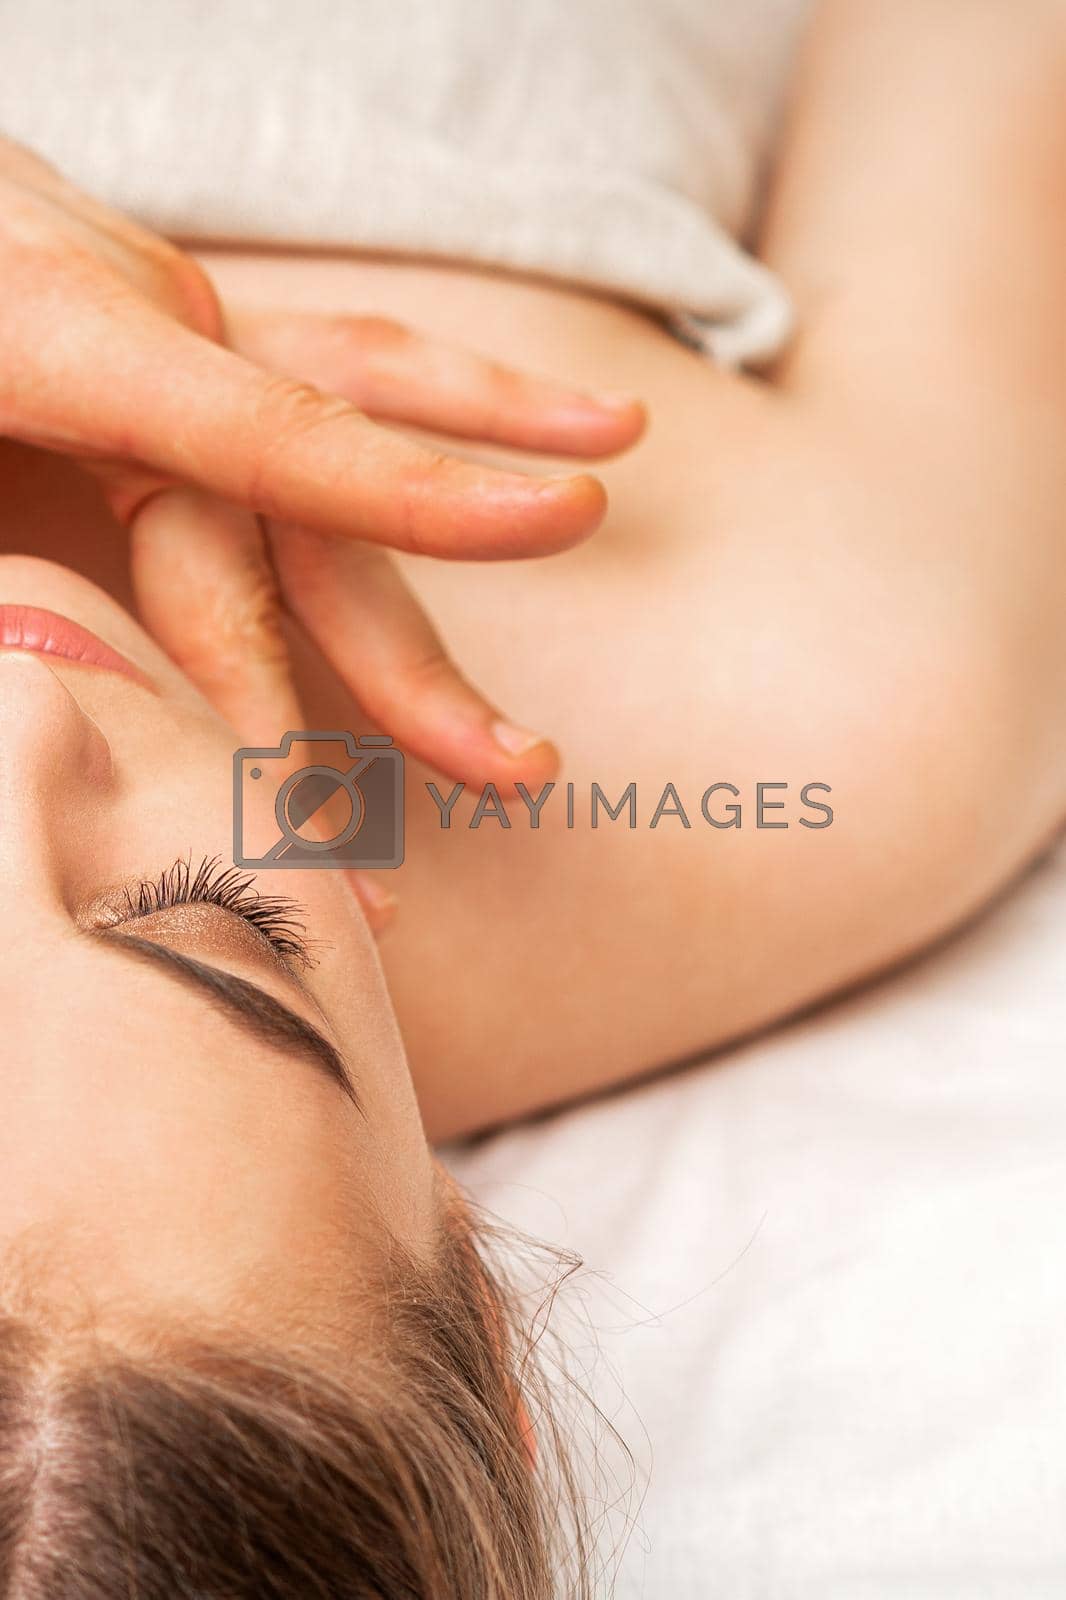 Royalty free image of Chin or neck massage of woman by okskukuruza